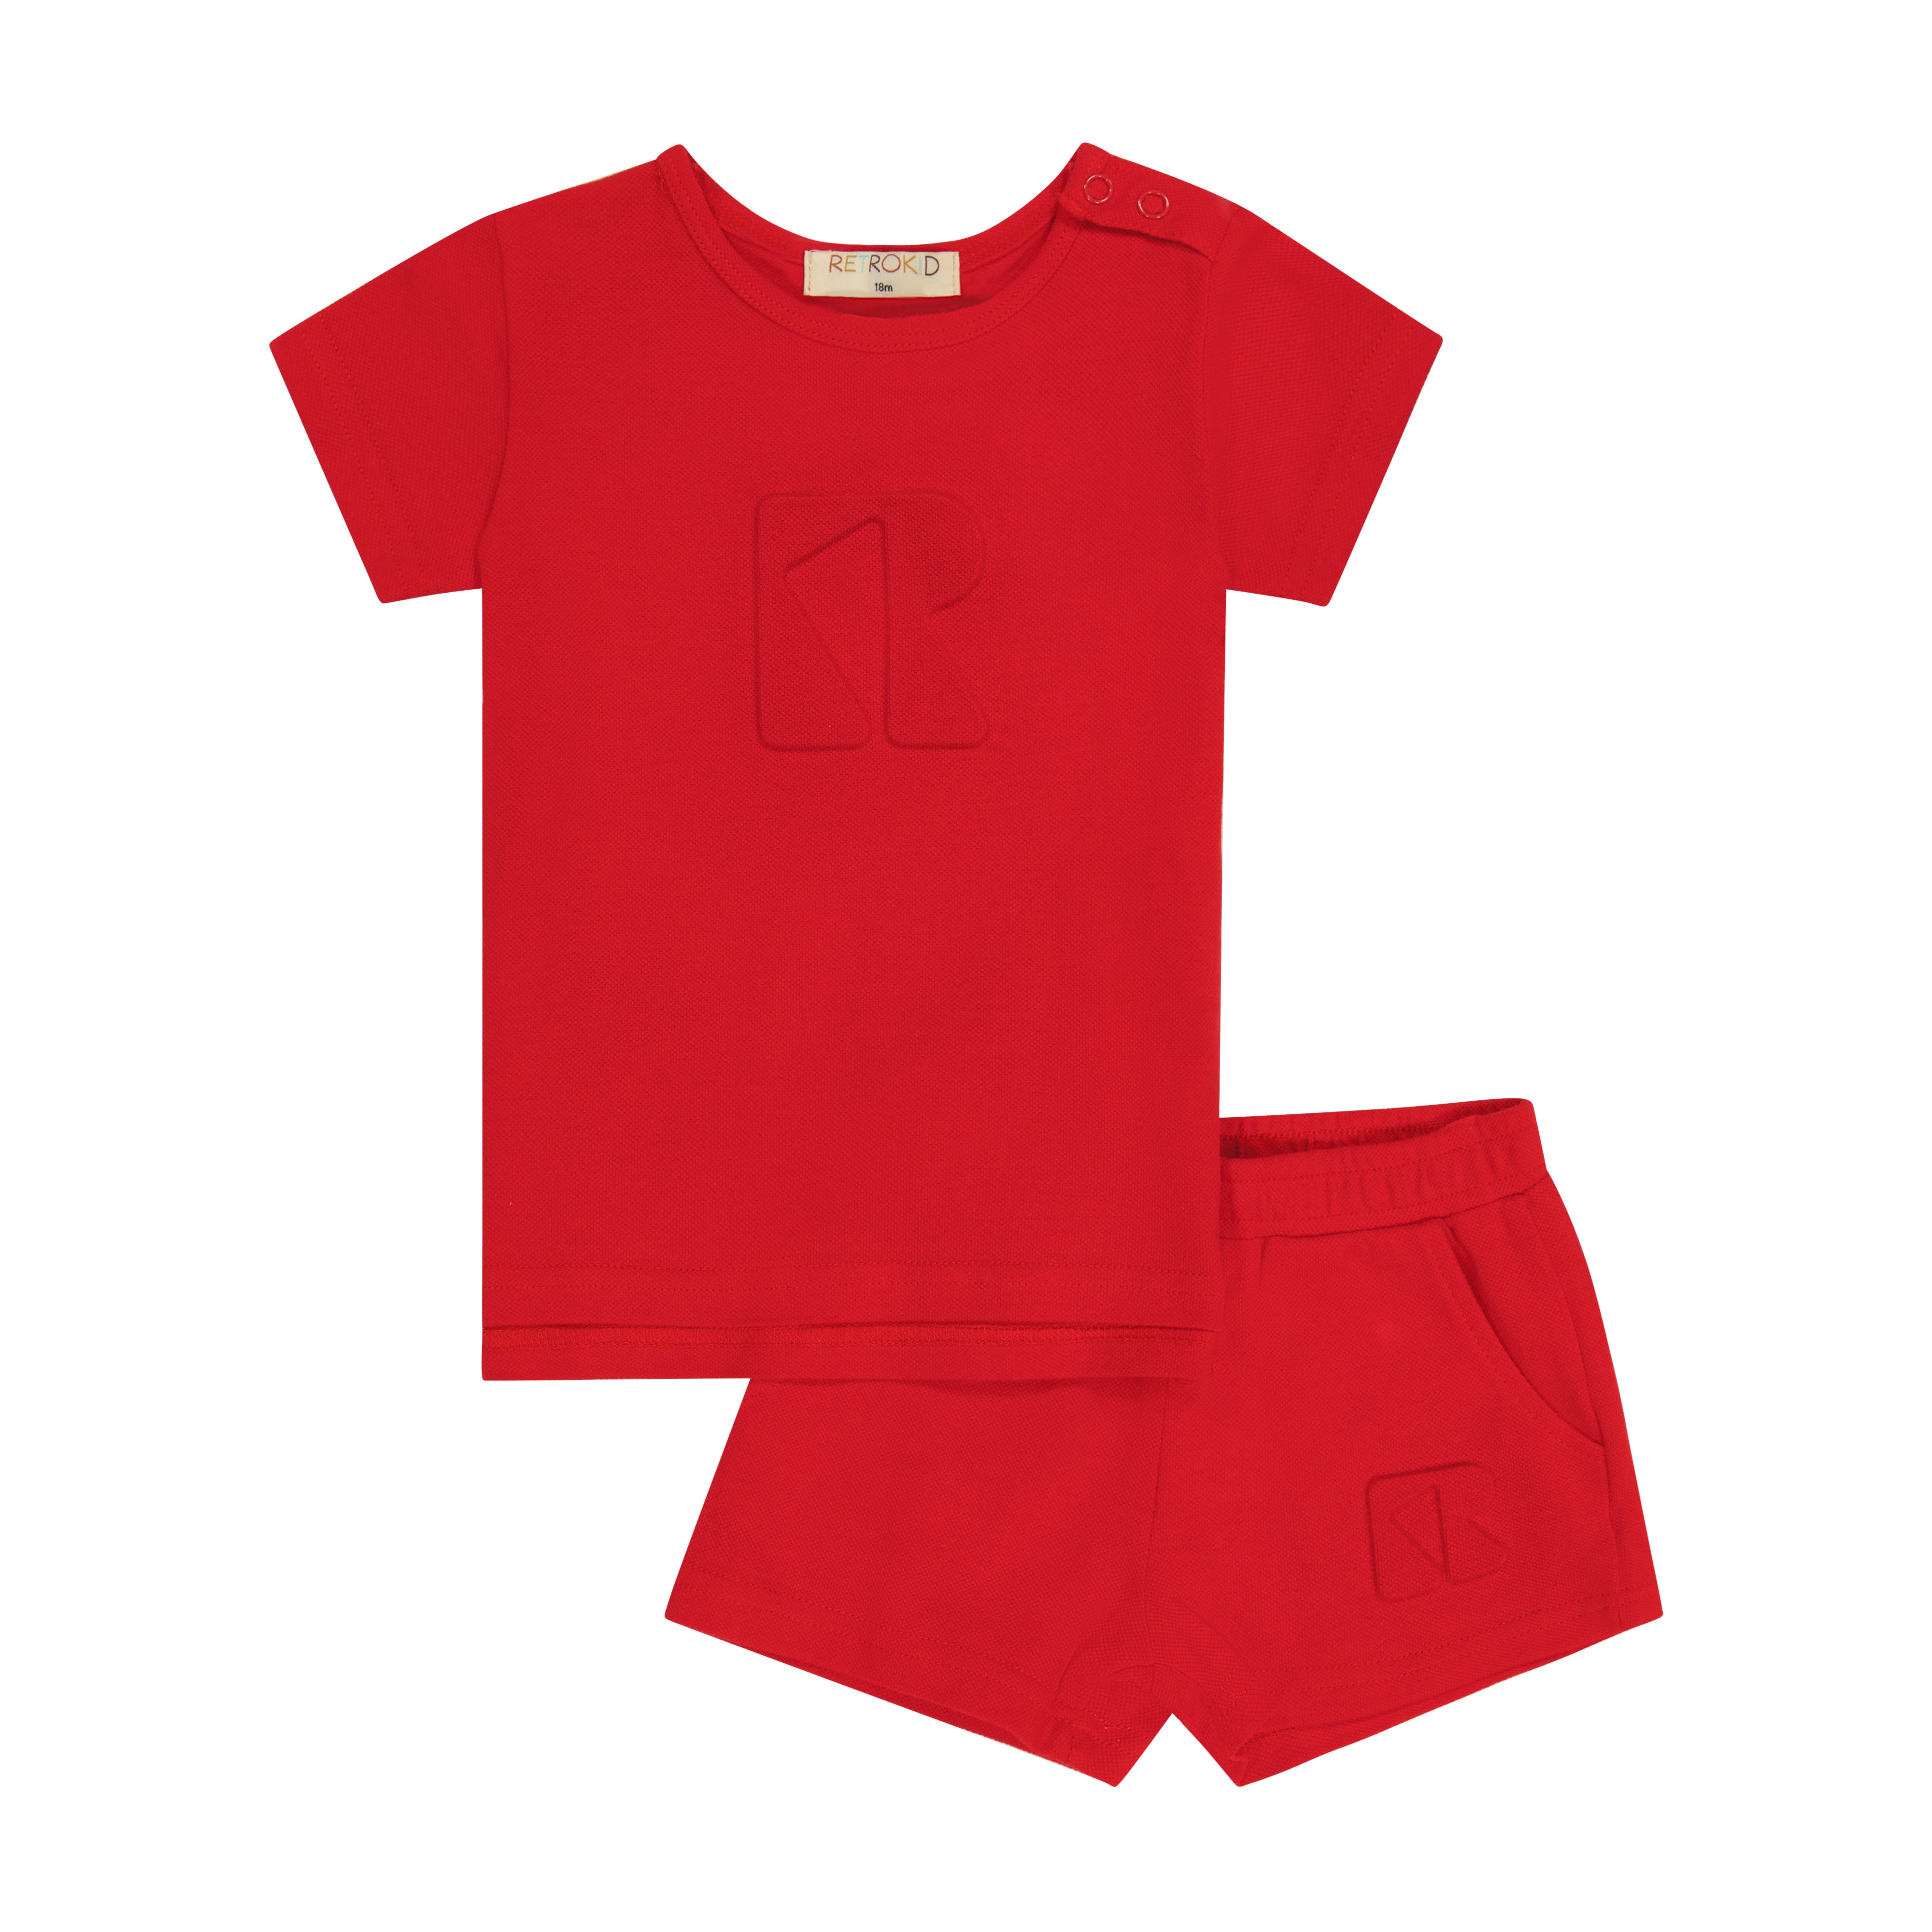 RetroKid Crimson Harper Pique Baby Set